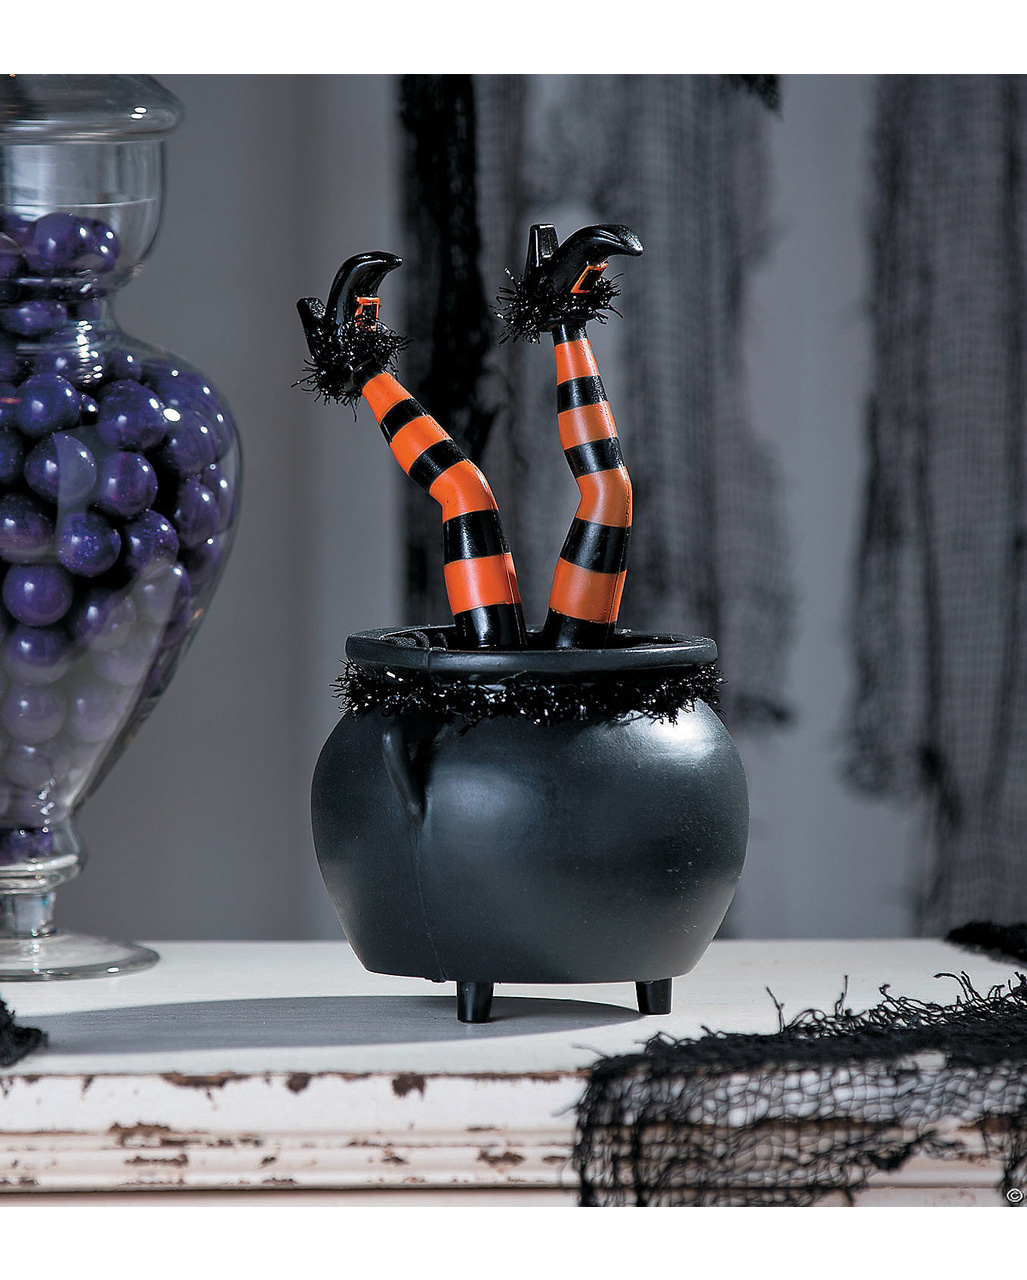 Hexenkessel mit zappelnden Hexenbeinen als 🎃 Deko | Horror-Shop.com